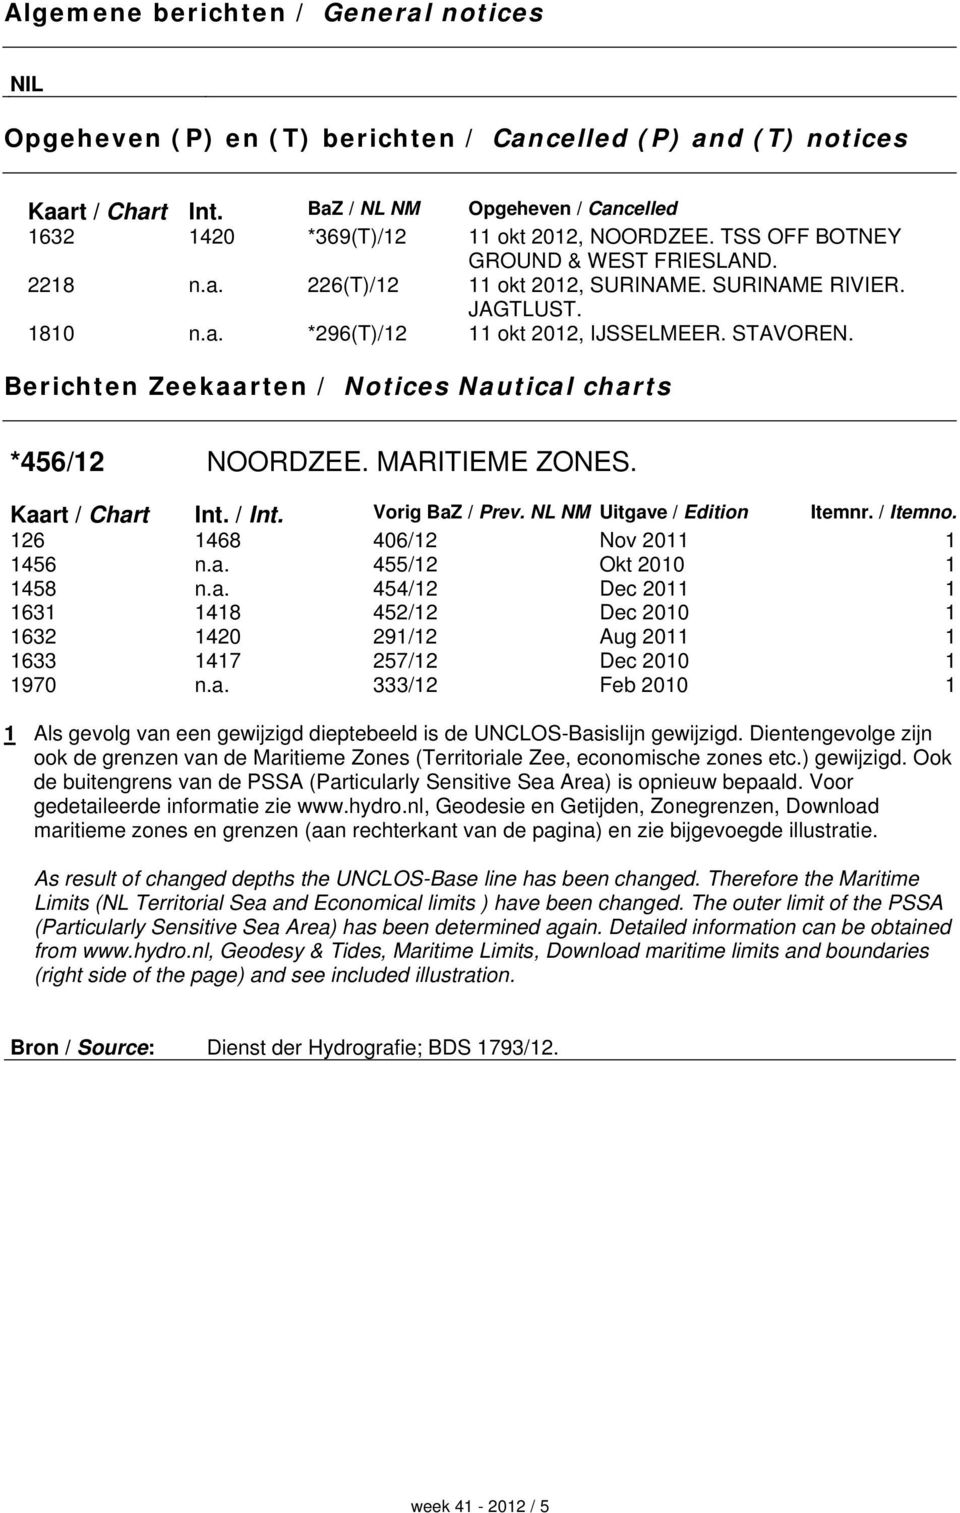 Berichten Zeekaarten / Notices Nautical charts *456/12 NOORDZEE. MARITIEME ZONES. Kaart / Chart Int. / Int. Vorig BaZ / Prev. NL NM Uitgave / Edition Itemnr. / Itemno.